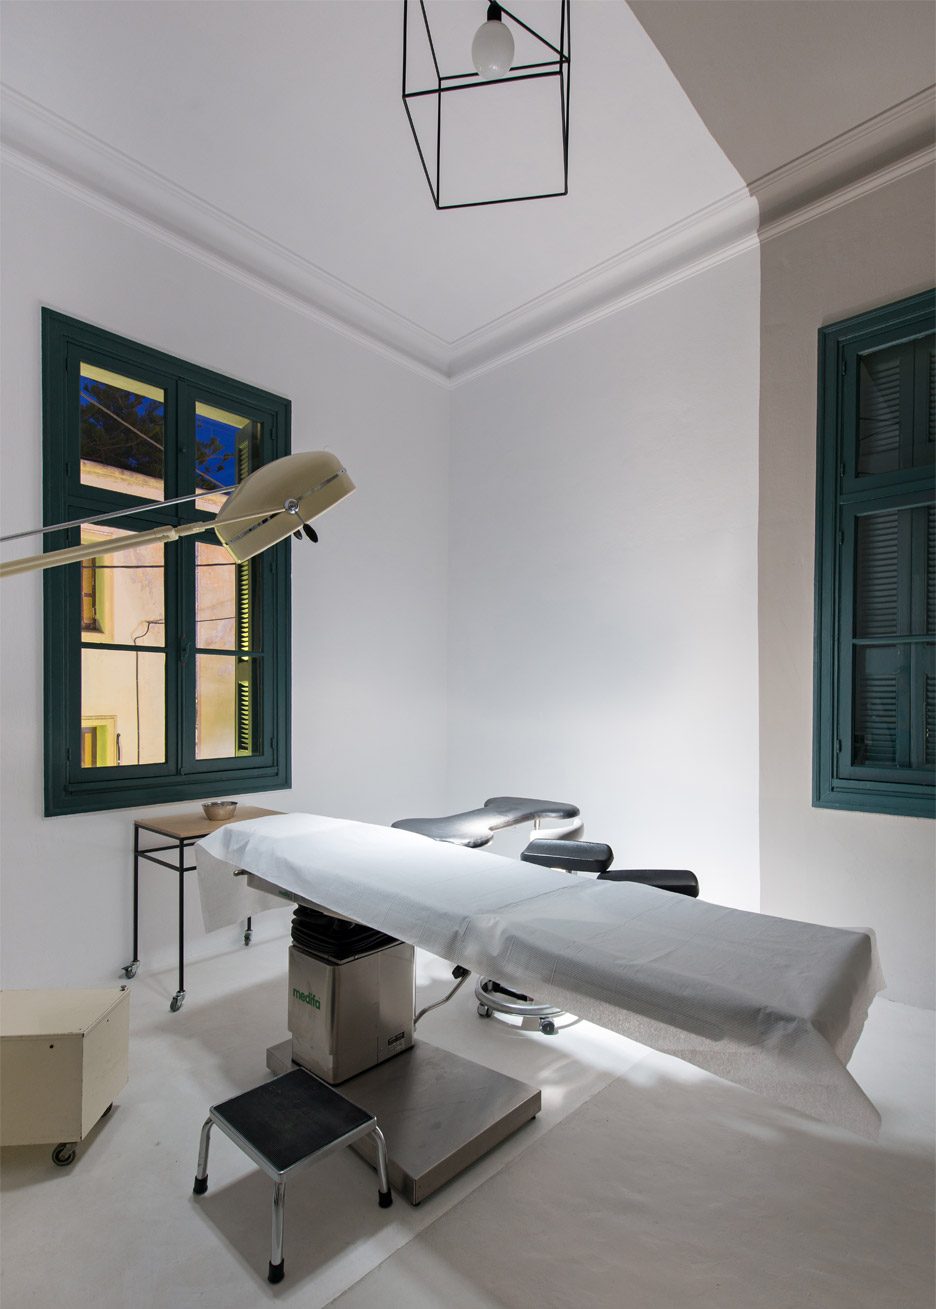 dARCHstudio designs plastic surgery practice in Greece